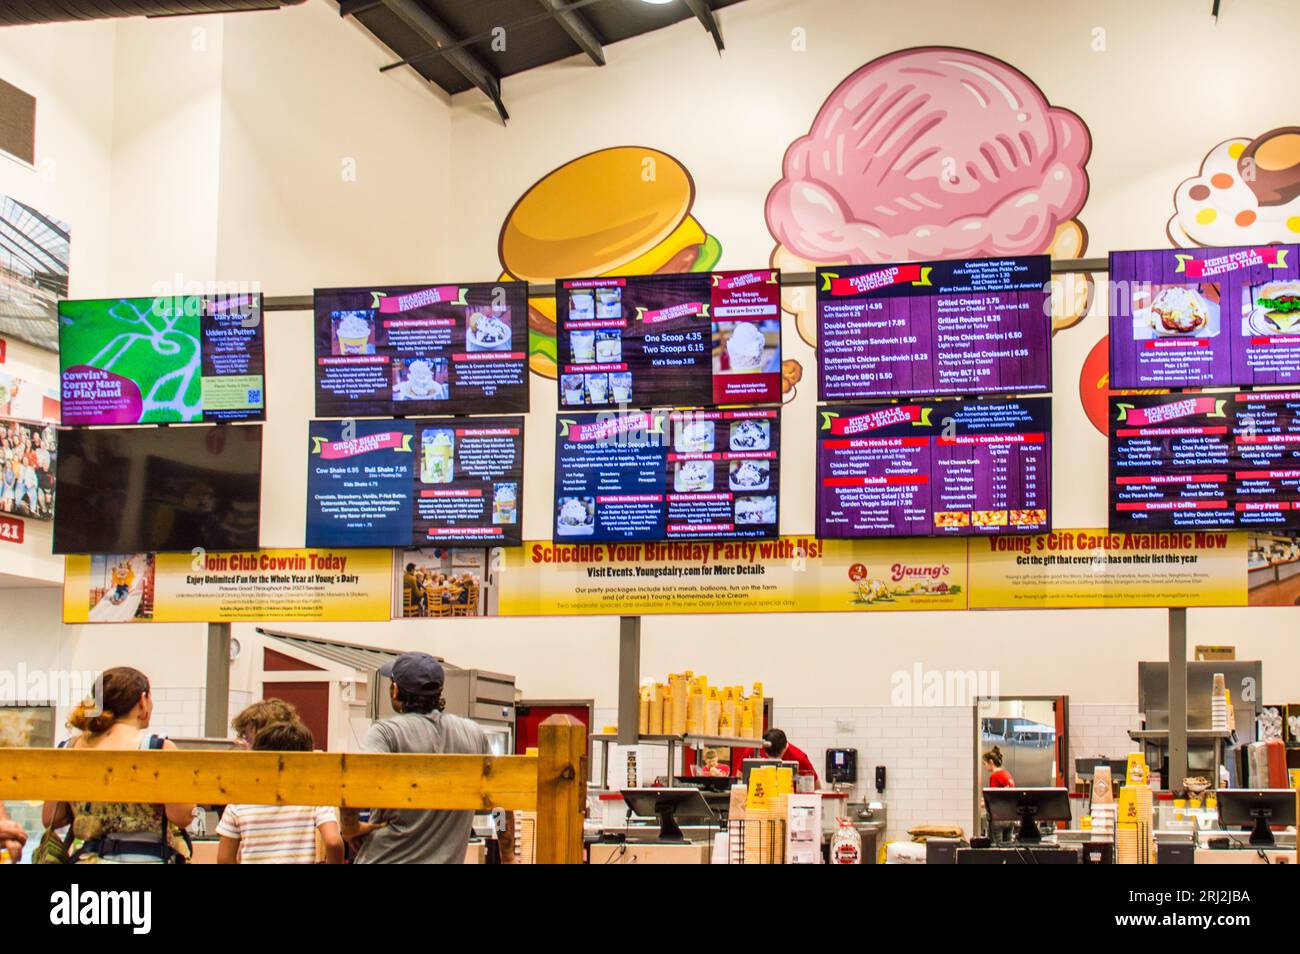 Menu de nourriture et de crème glacée sur écran numérique dans la ferme Young's Jersey Banque D'Images